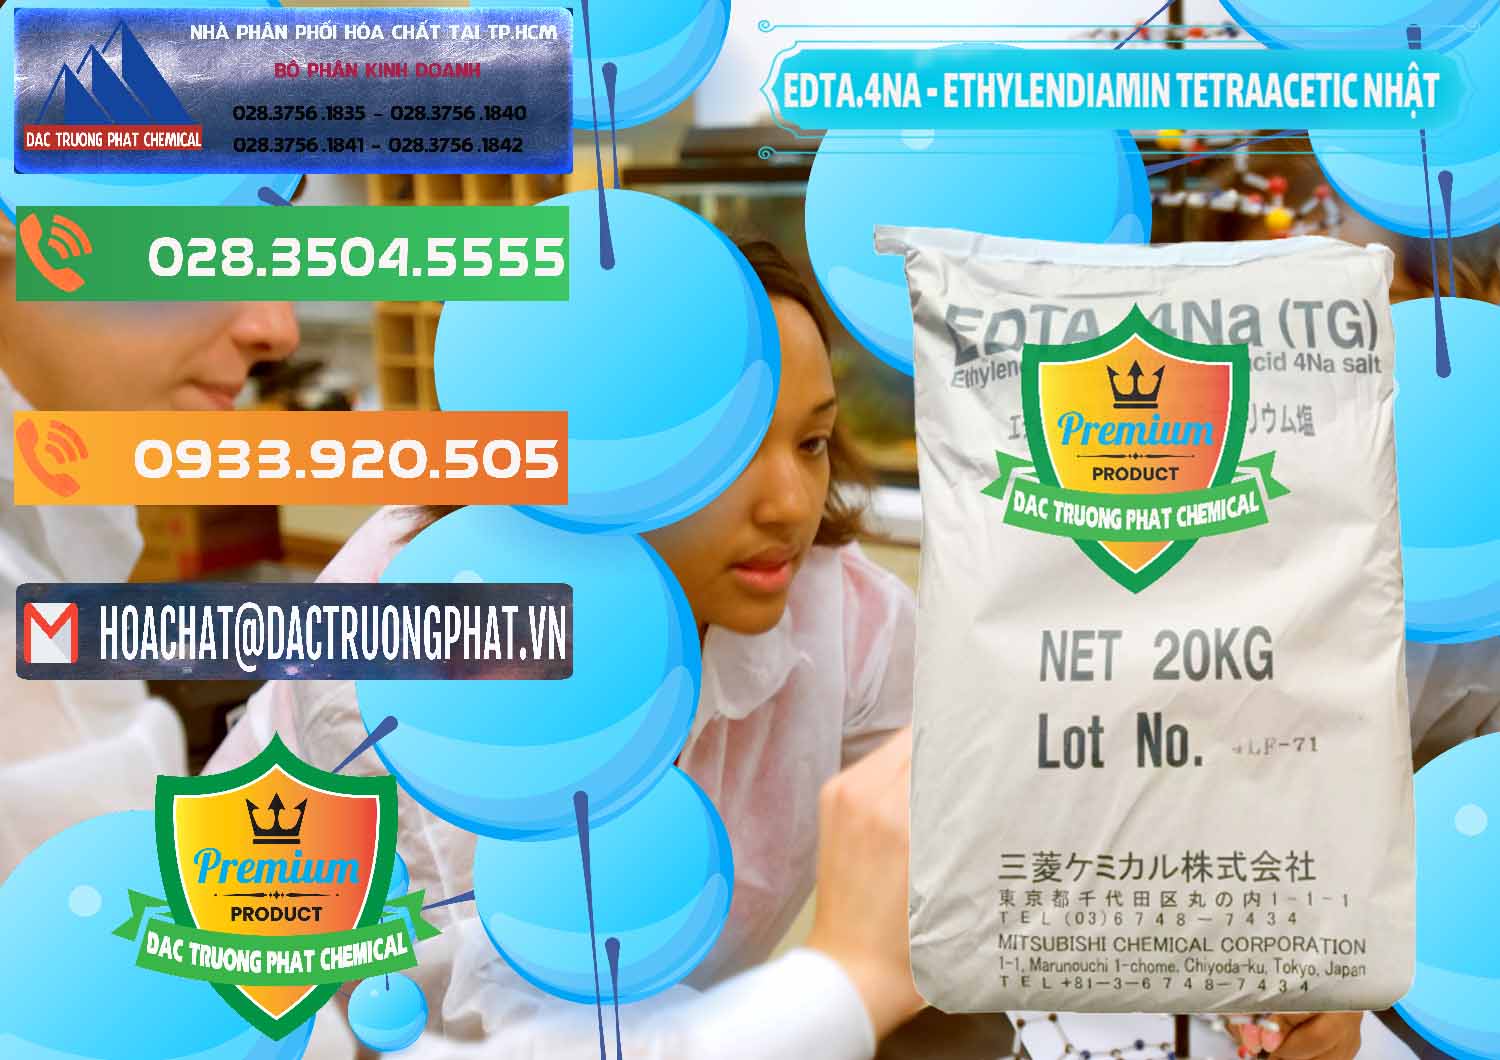 Cty chuyên phân phối và bán EDTA 4Na - Ethylendiamin Tetraacetic Nhật Bản Japan - 0482 - Cty chuyên cung cấp ( nhập khẩu ) hóa chất tại TP.HCM - hoachatxulynuoc.com.vn